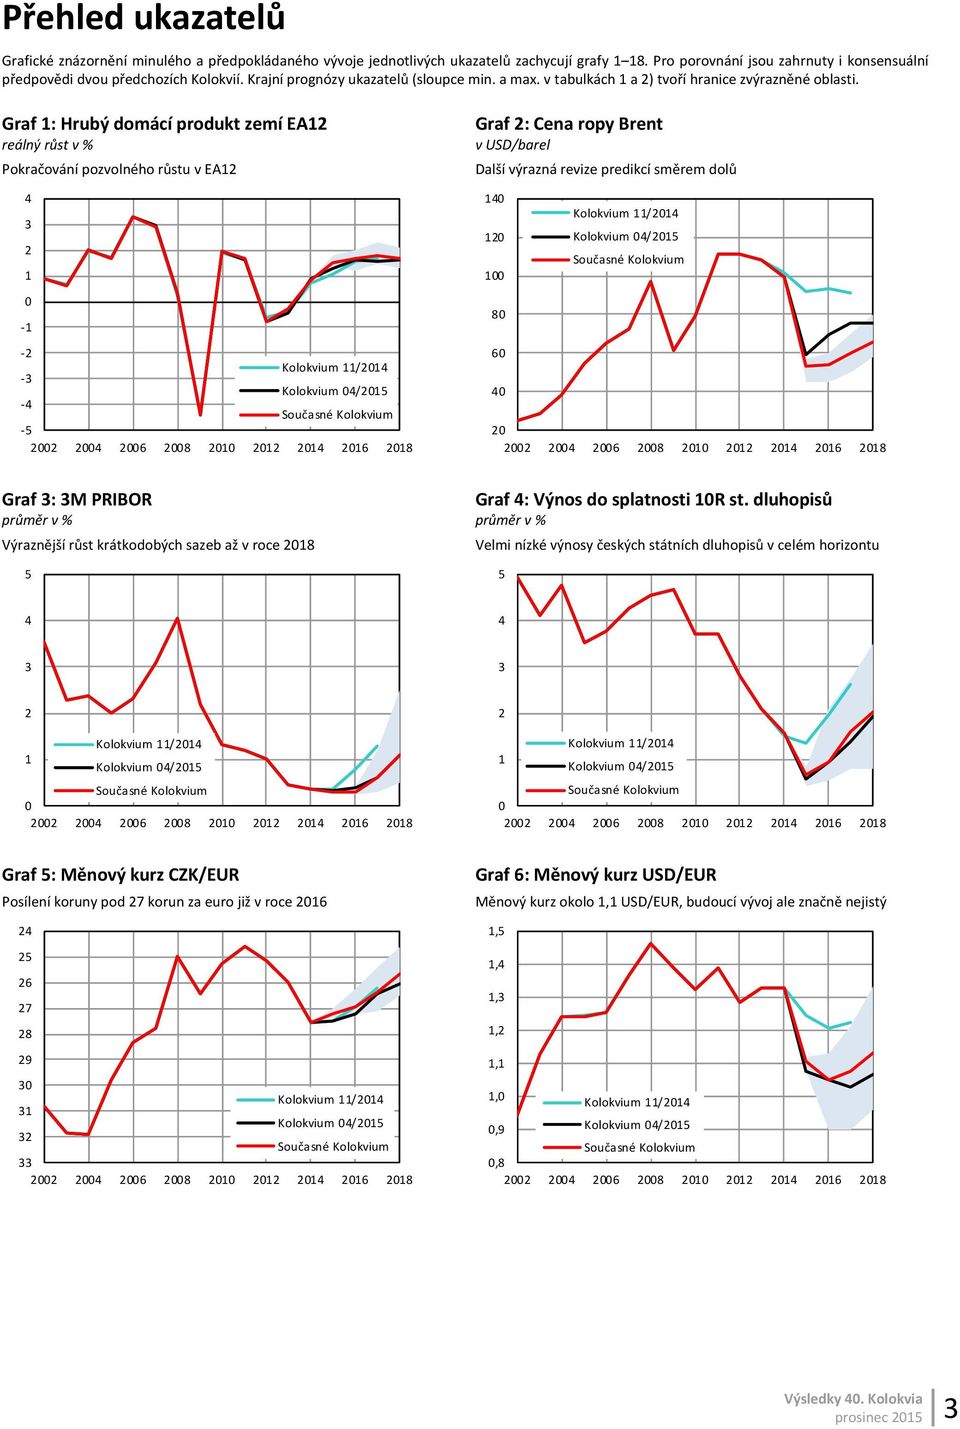 Graf : Hrubý domácí produkt zemí EA reálný růst v % Pokračování pozvolného růstu v EA - - - - - Graf : Cena ropy Brent v USD/barel Další výrazná revize predikcí směrem dolů Graf : M PRIBOR Graf :